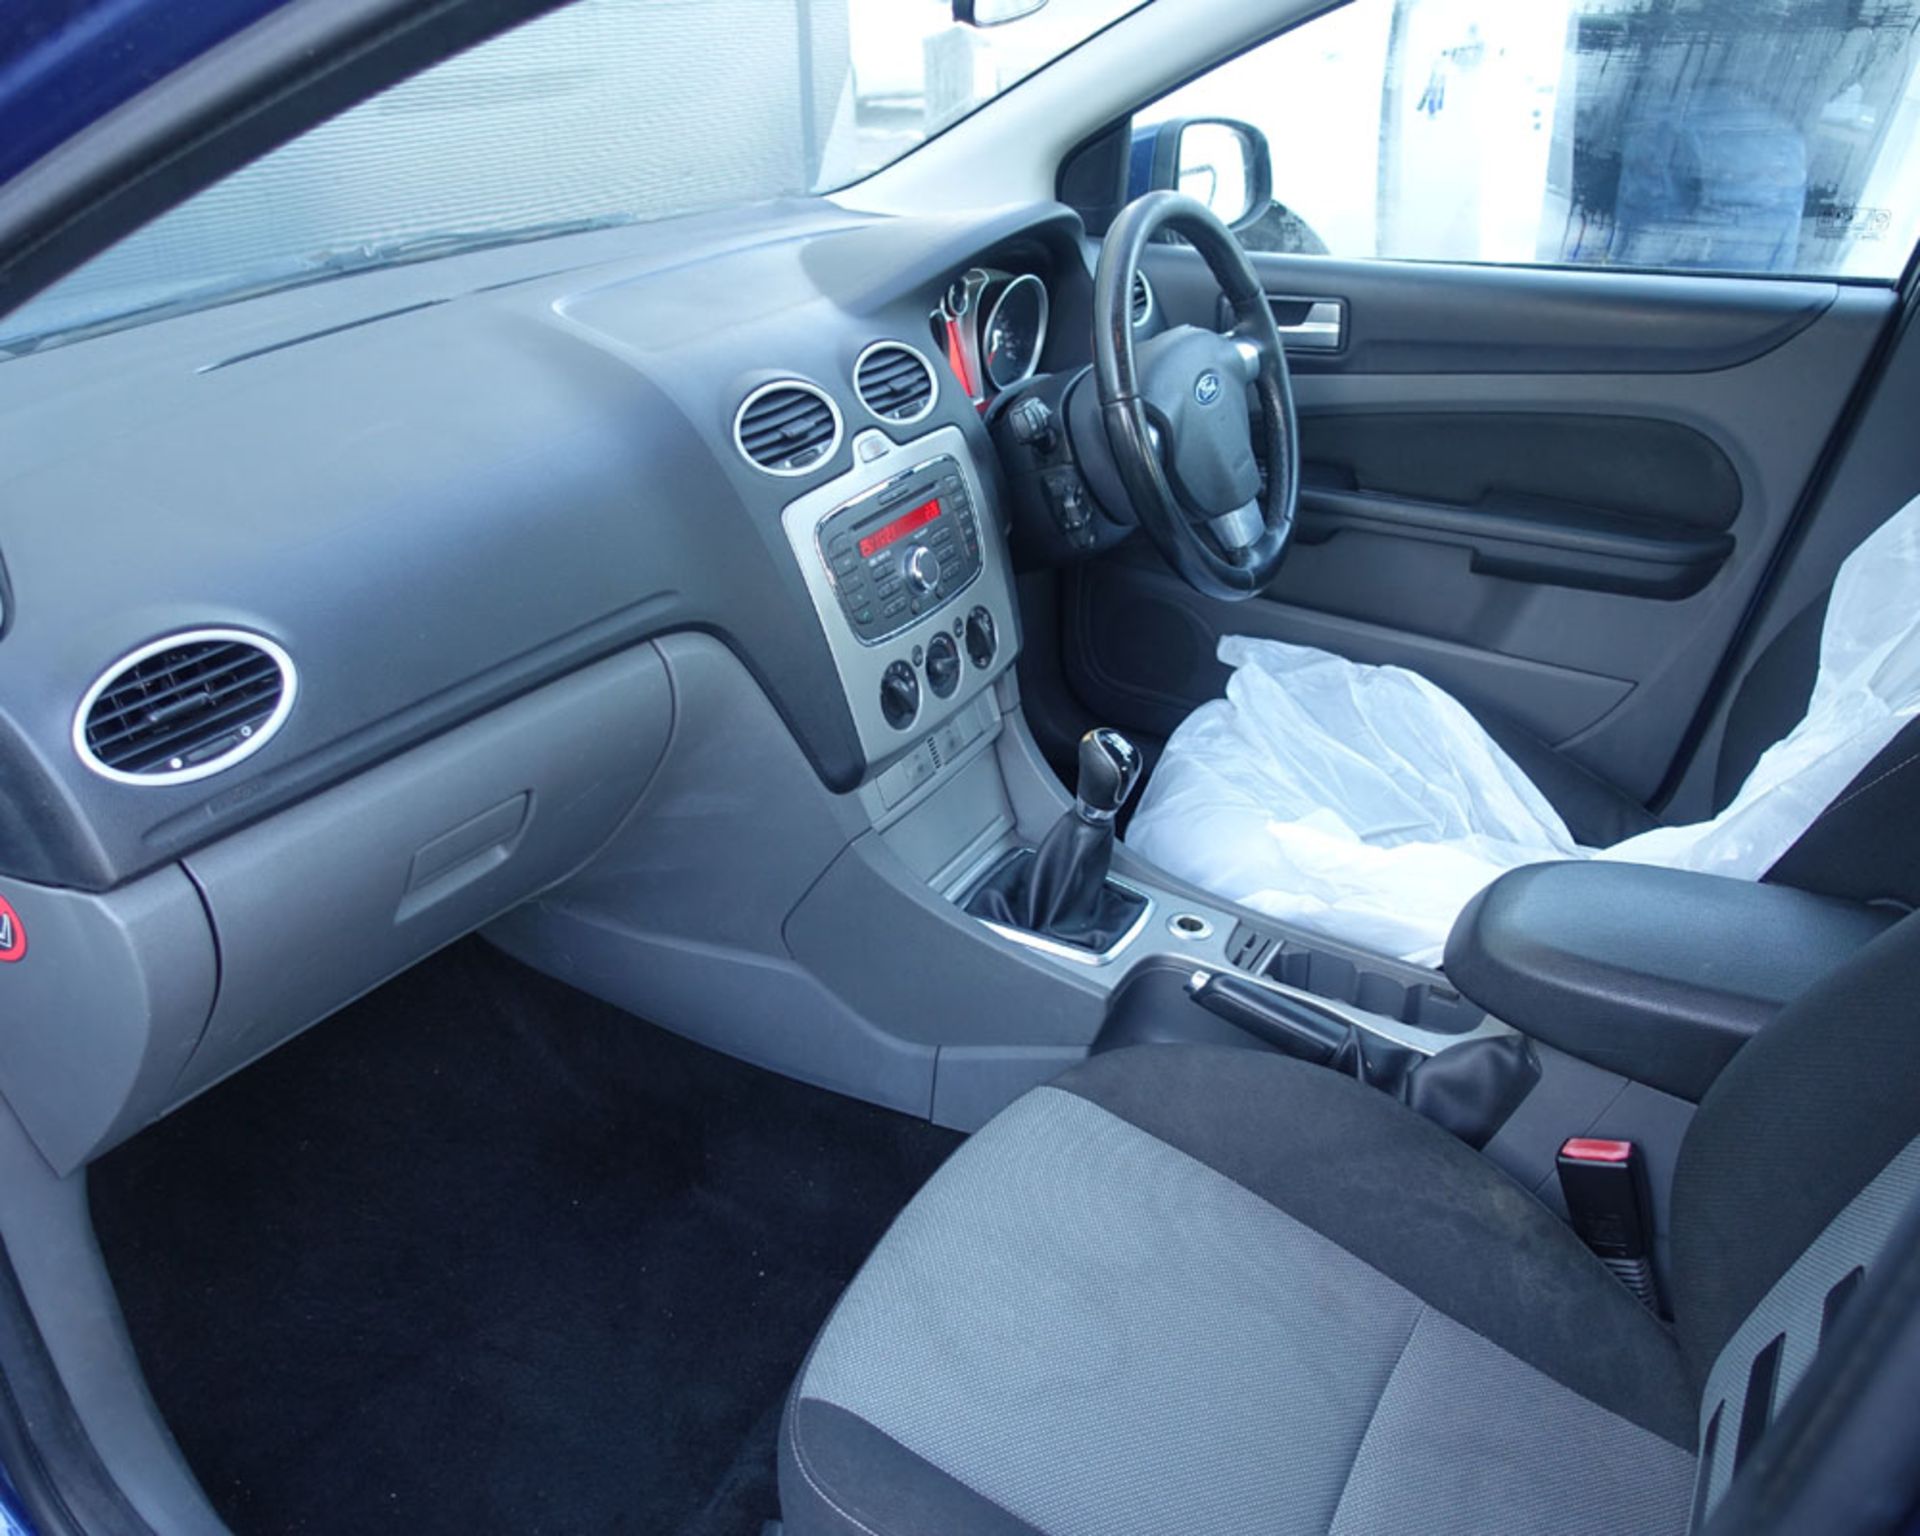 RJ09 VKV (2009) Ford Focus Zetec 1560cc TDCI 5 door hatchback, No documents, MOT to 13.3.22. - Image 6 of 9